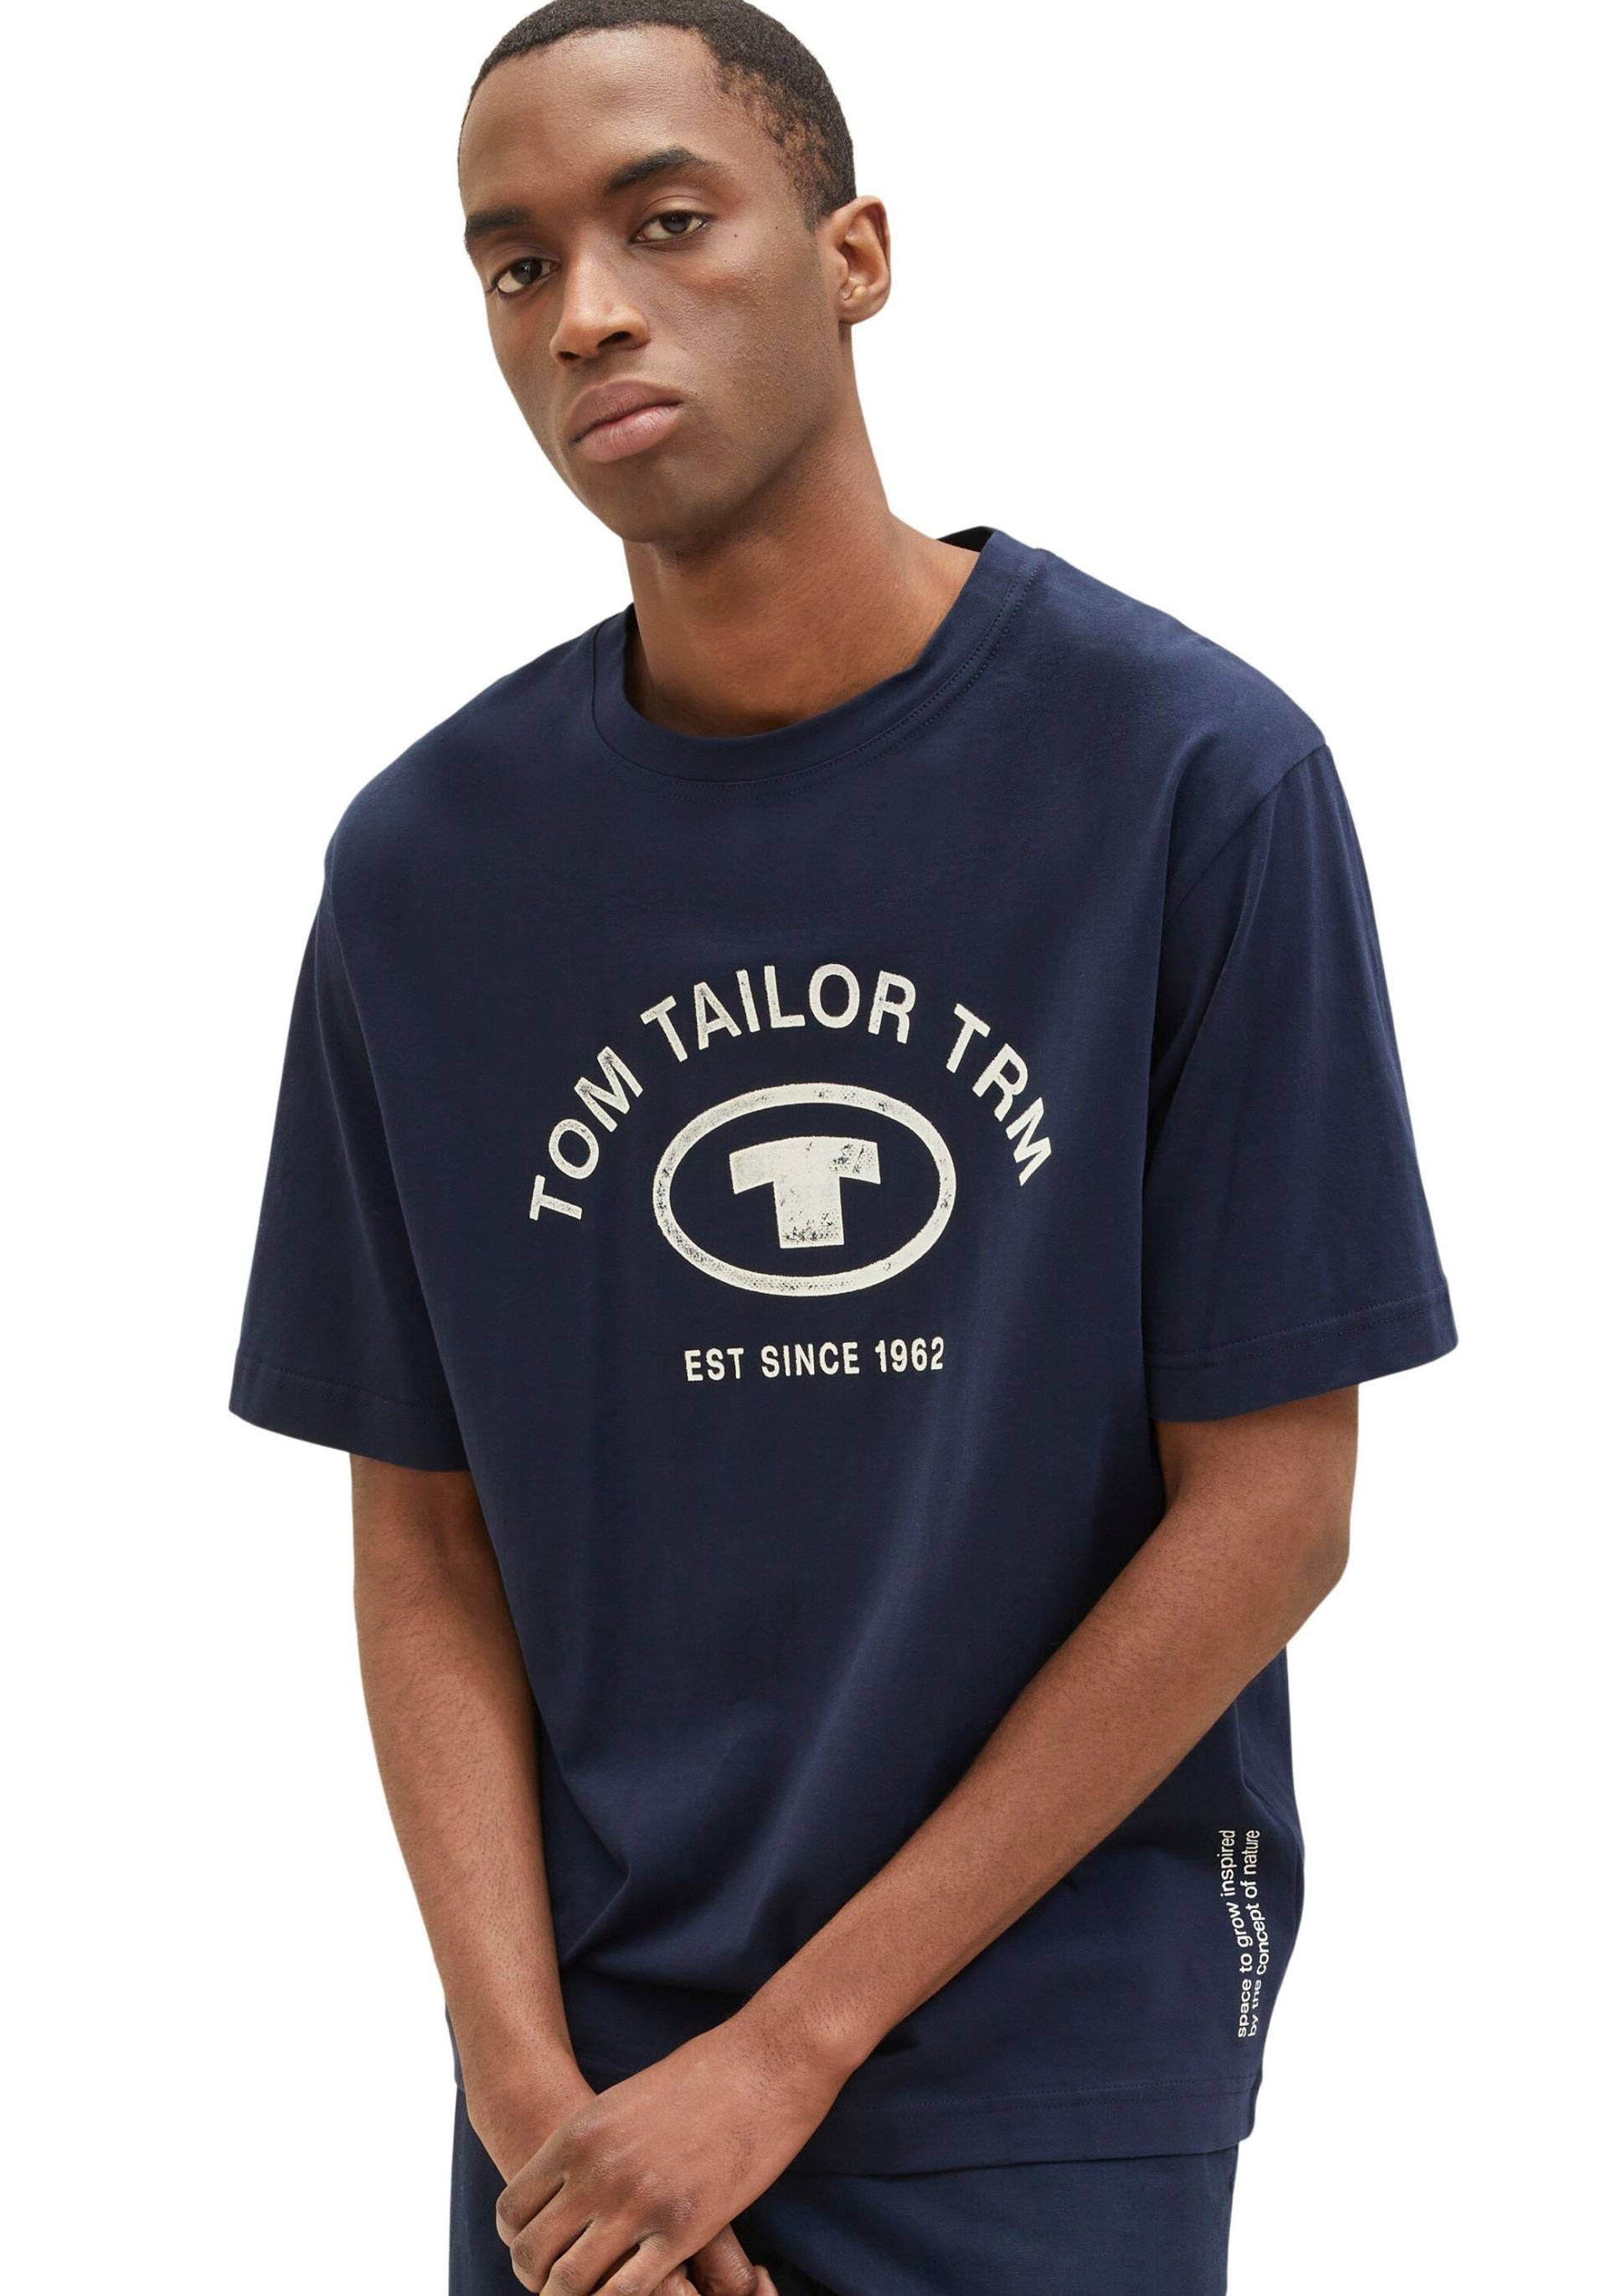 TOM TAILOR T-Shirt von Tom Tailor